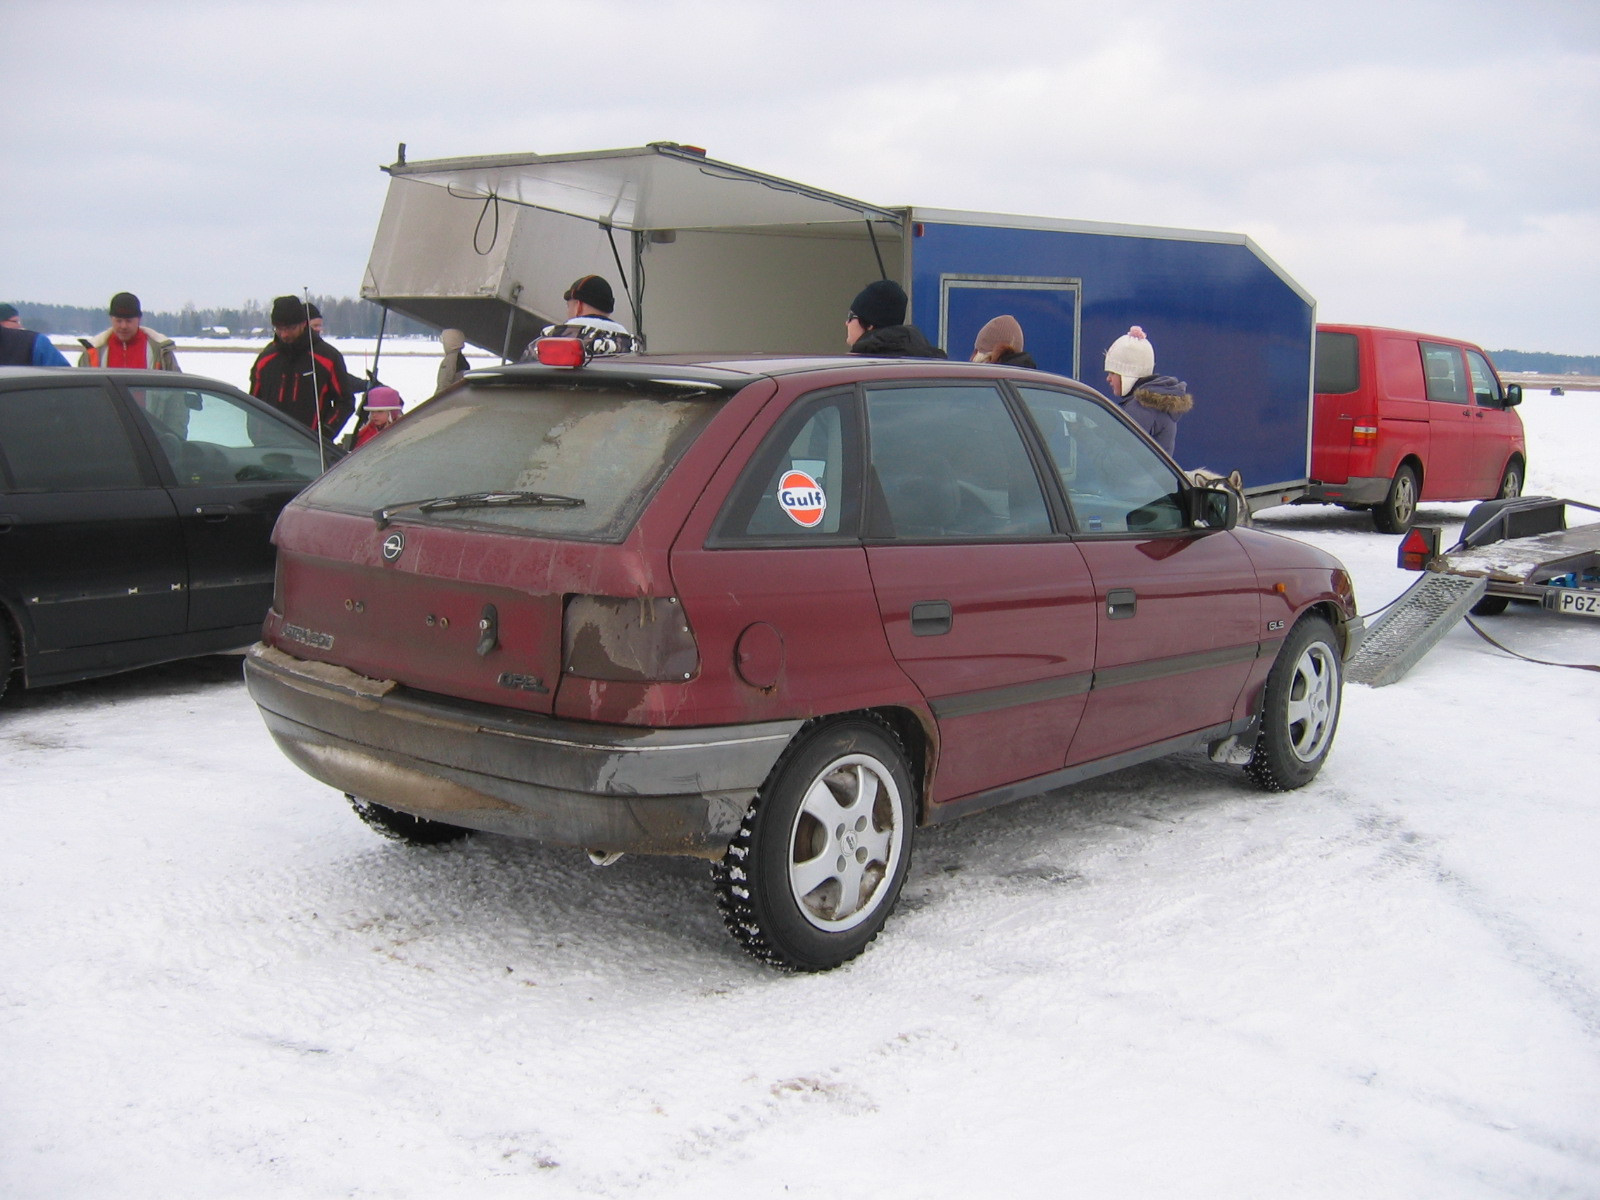 TalvipÃ¶rinÃ¤t KantelejÃ¤rvellÃ¤ 22.2.2009, Punainen Opel Astra